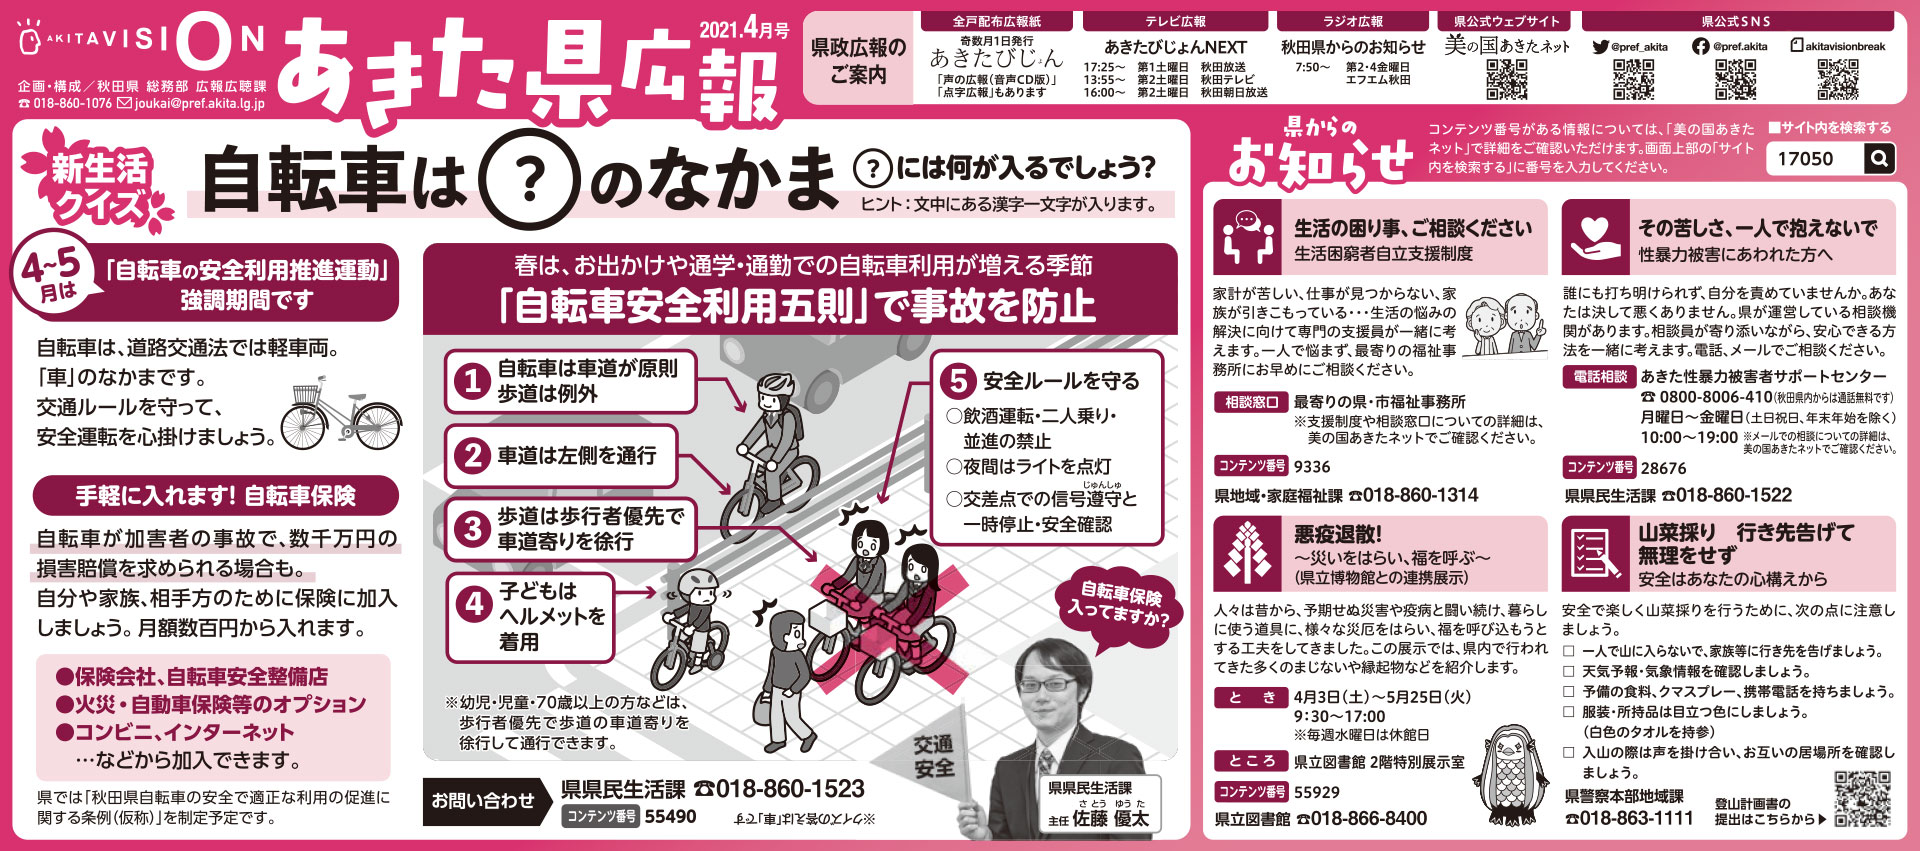 令和3年4月-秋田県新聞広報-あきた県広報